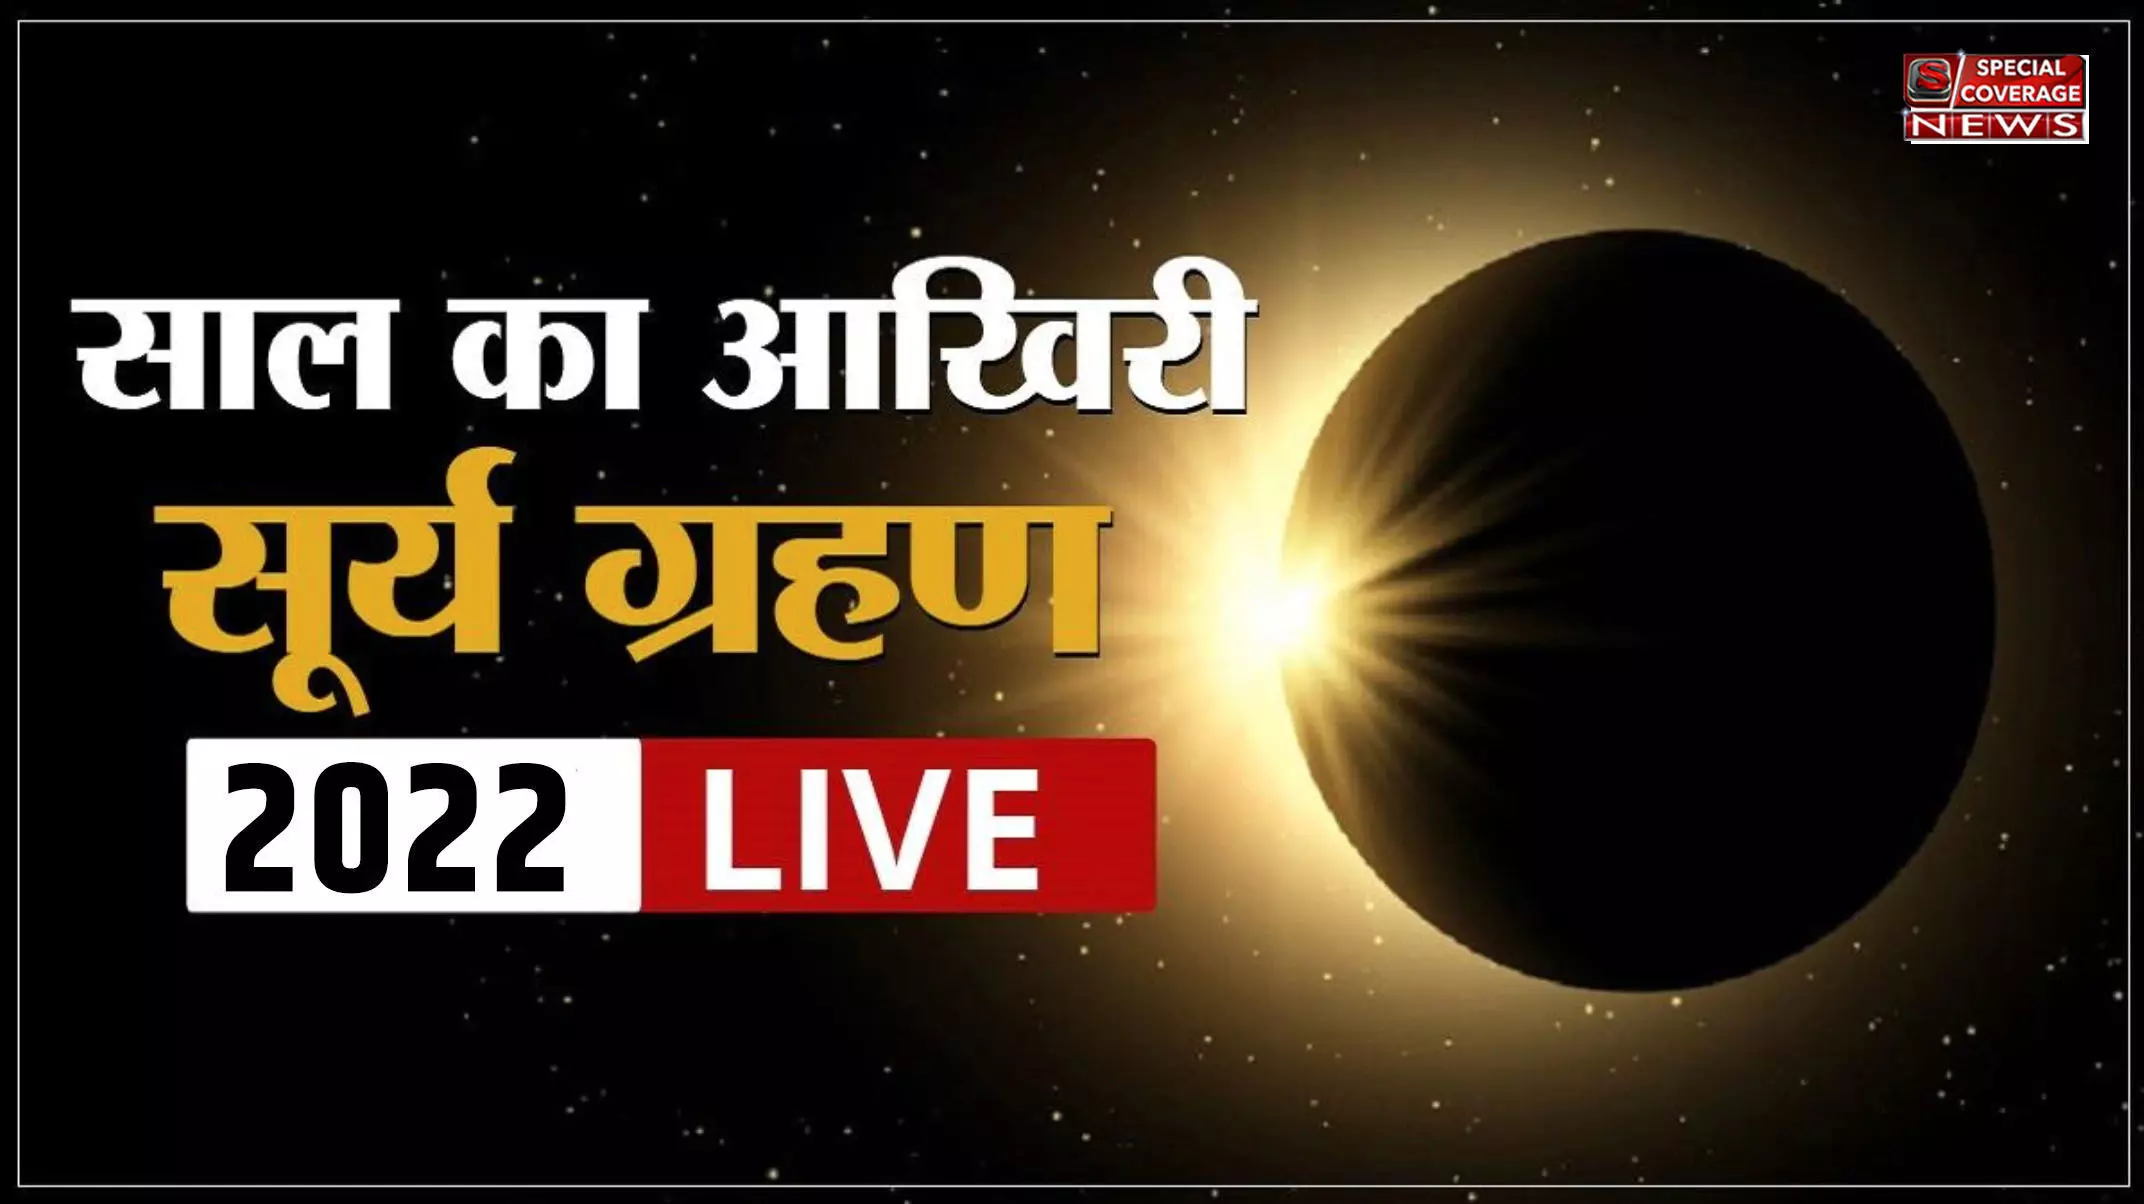 Surya Grahan Live Updates: दिल्ली, नोएडा, लखनऊ समेत देश के अन्य शहरों में कब दिखेगा सूर्य ग्रहण? भूलकर भी ना करें ये काम